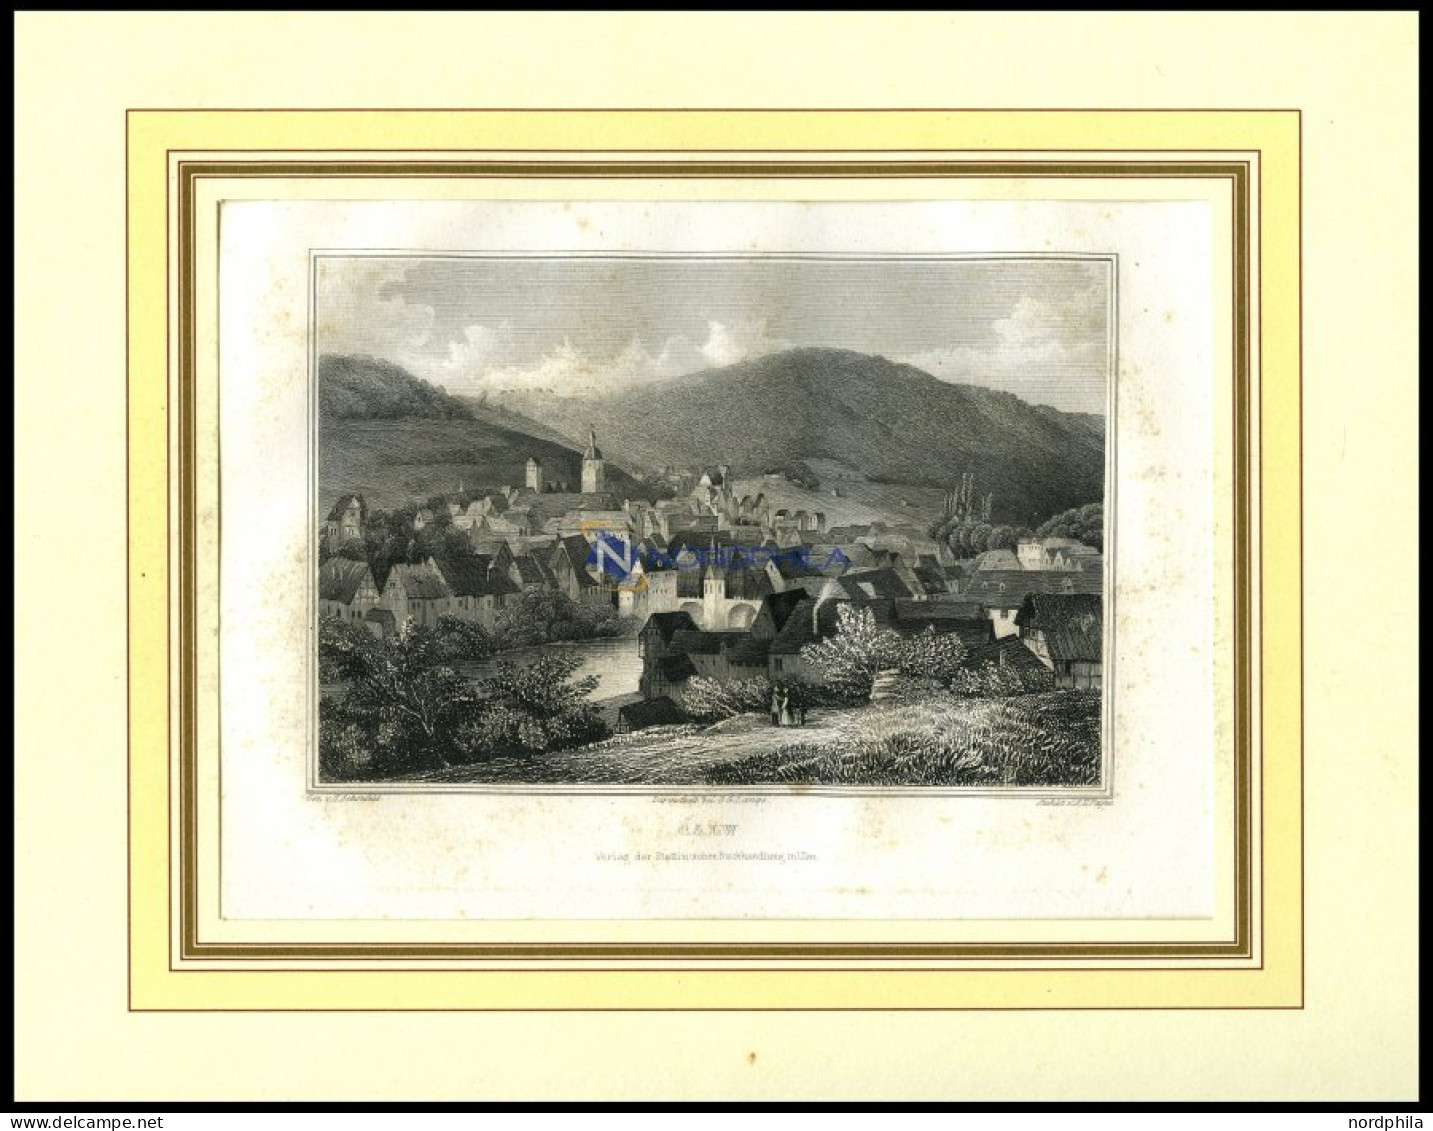 CALW, Gesamtansicht, Stahlstich Von Schanfeld/Payne, 1840 - Prenten & Gravure